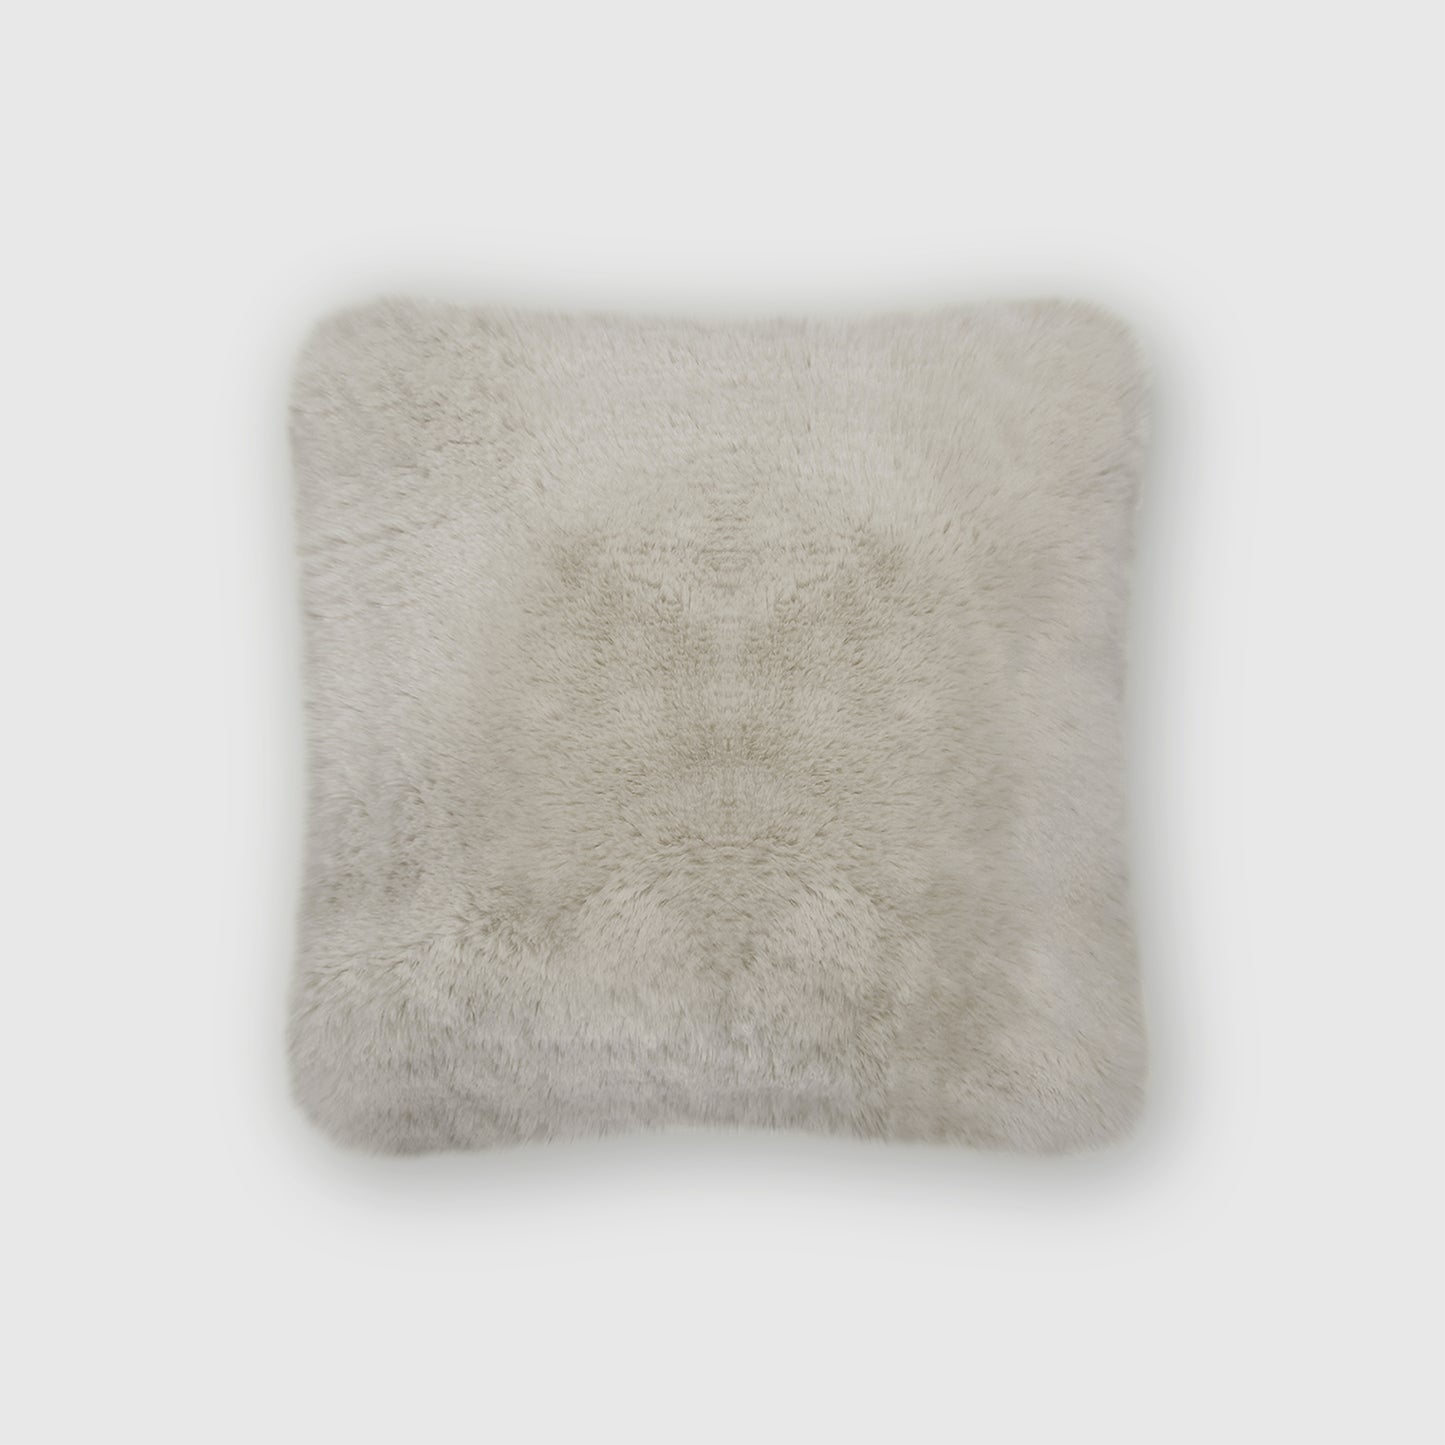 The Mood | Rex Faux Fur 16"x16" Pillow, Chateau Gray